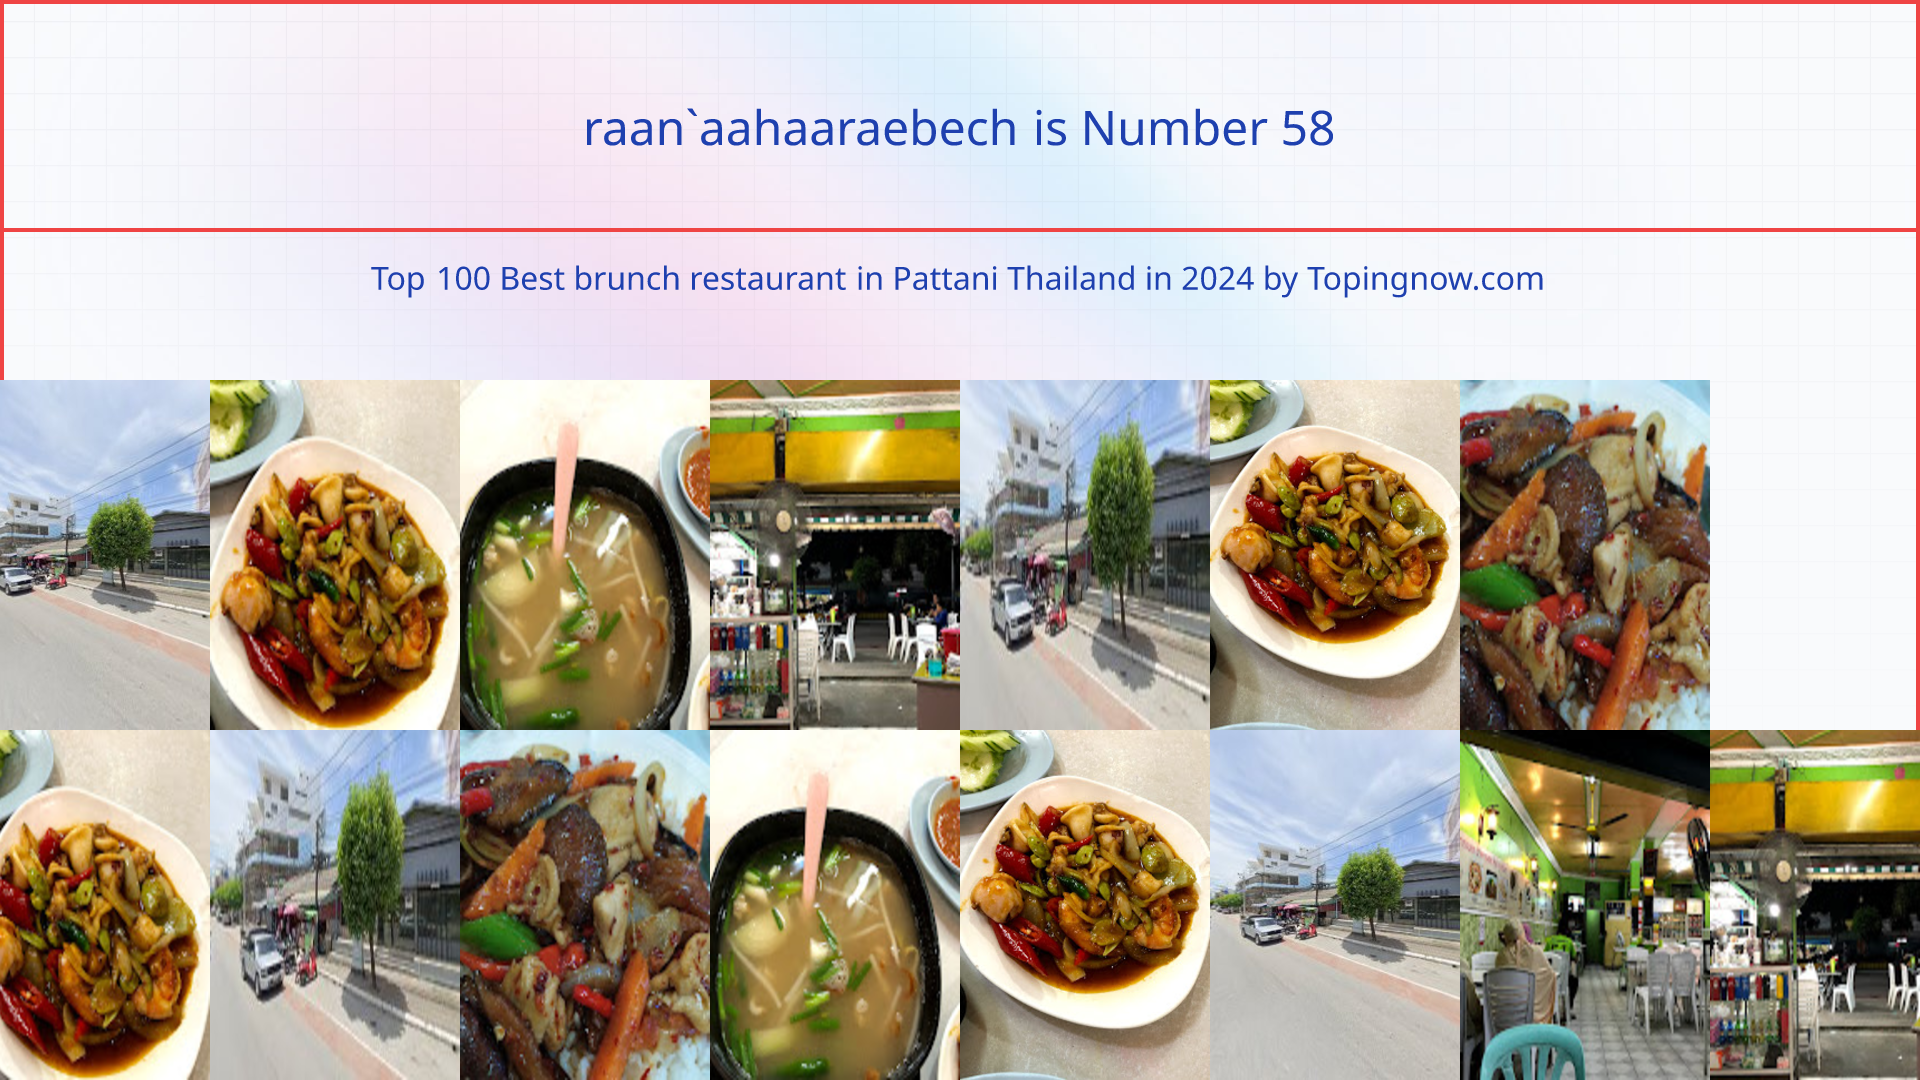 raan`aahaaraebech: Top 100 Best brunch restaurant in Pattani Thailand in 2024